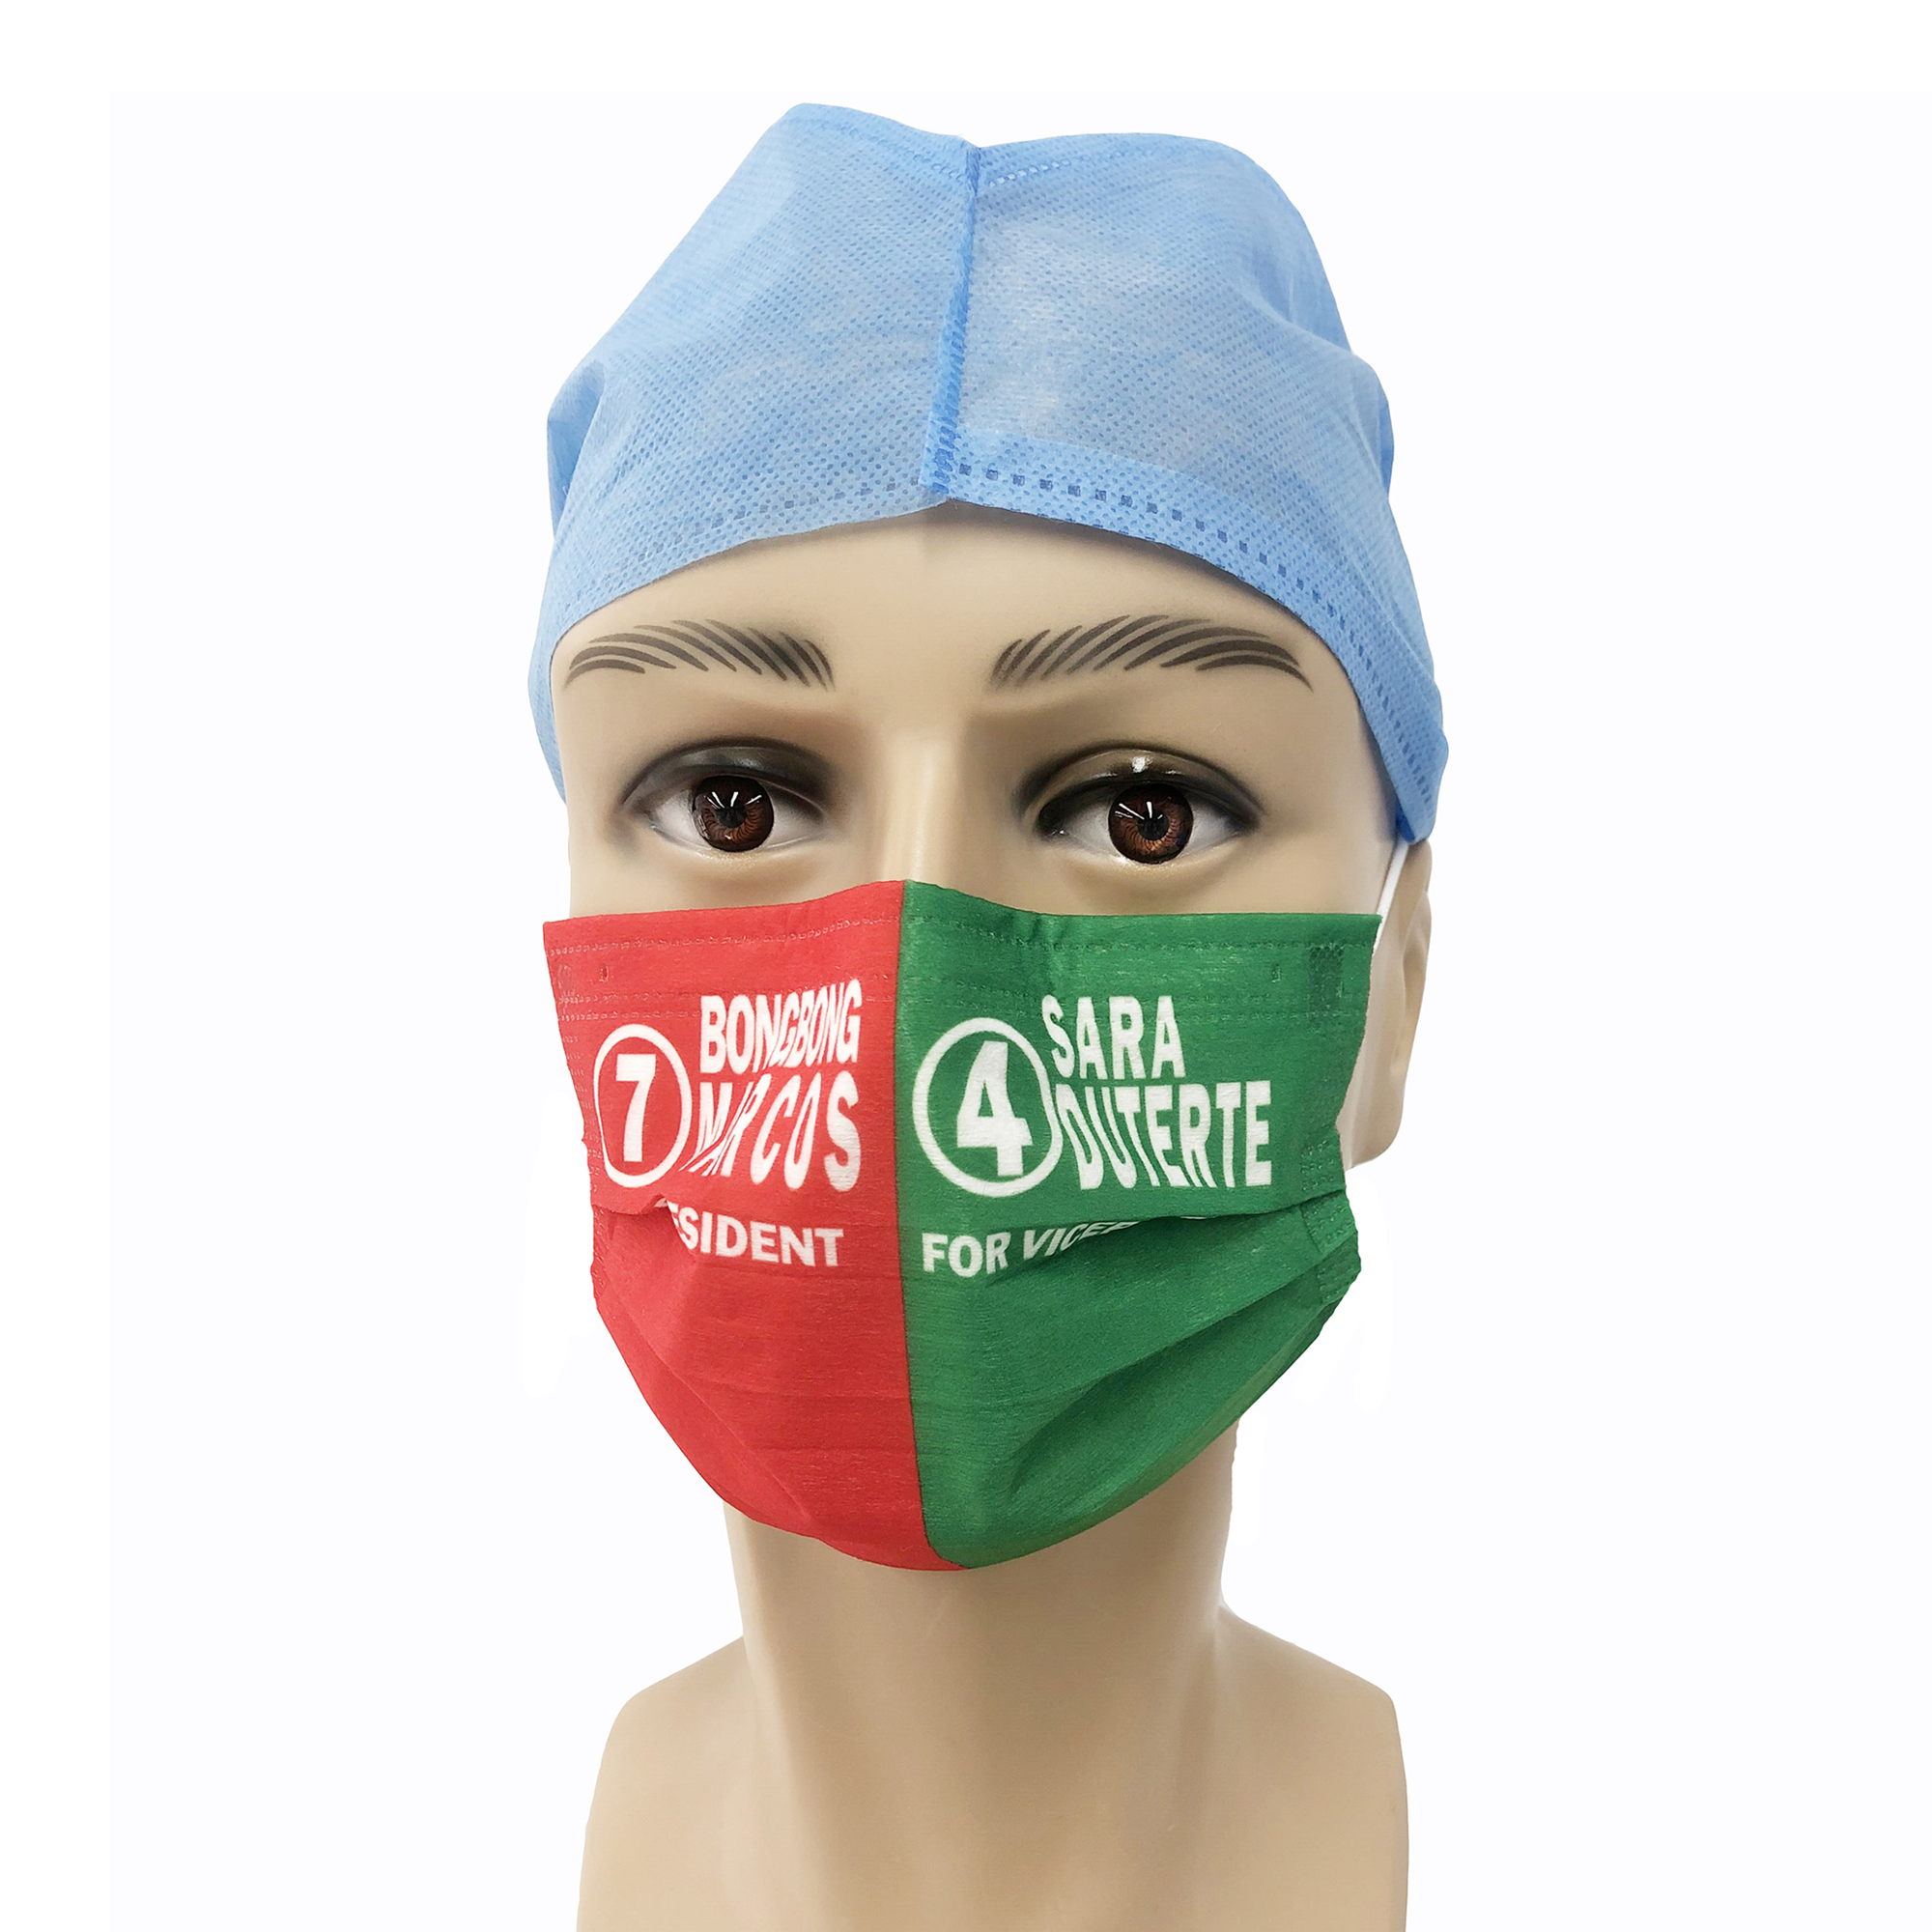 イヤーループ付き不織布プロテクトフェイスマスク、防塵マスク